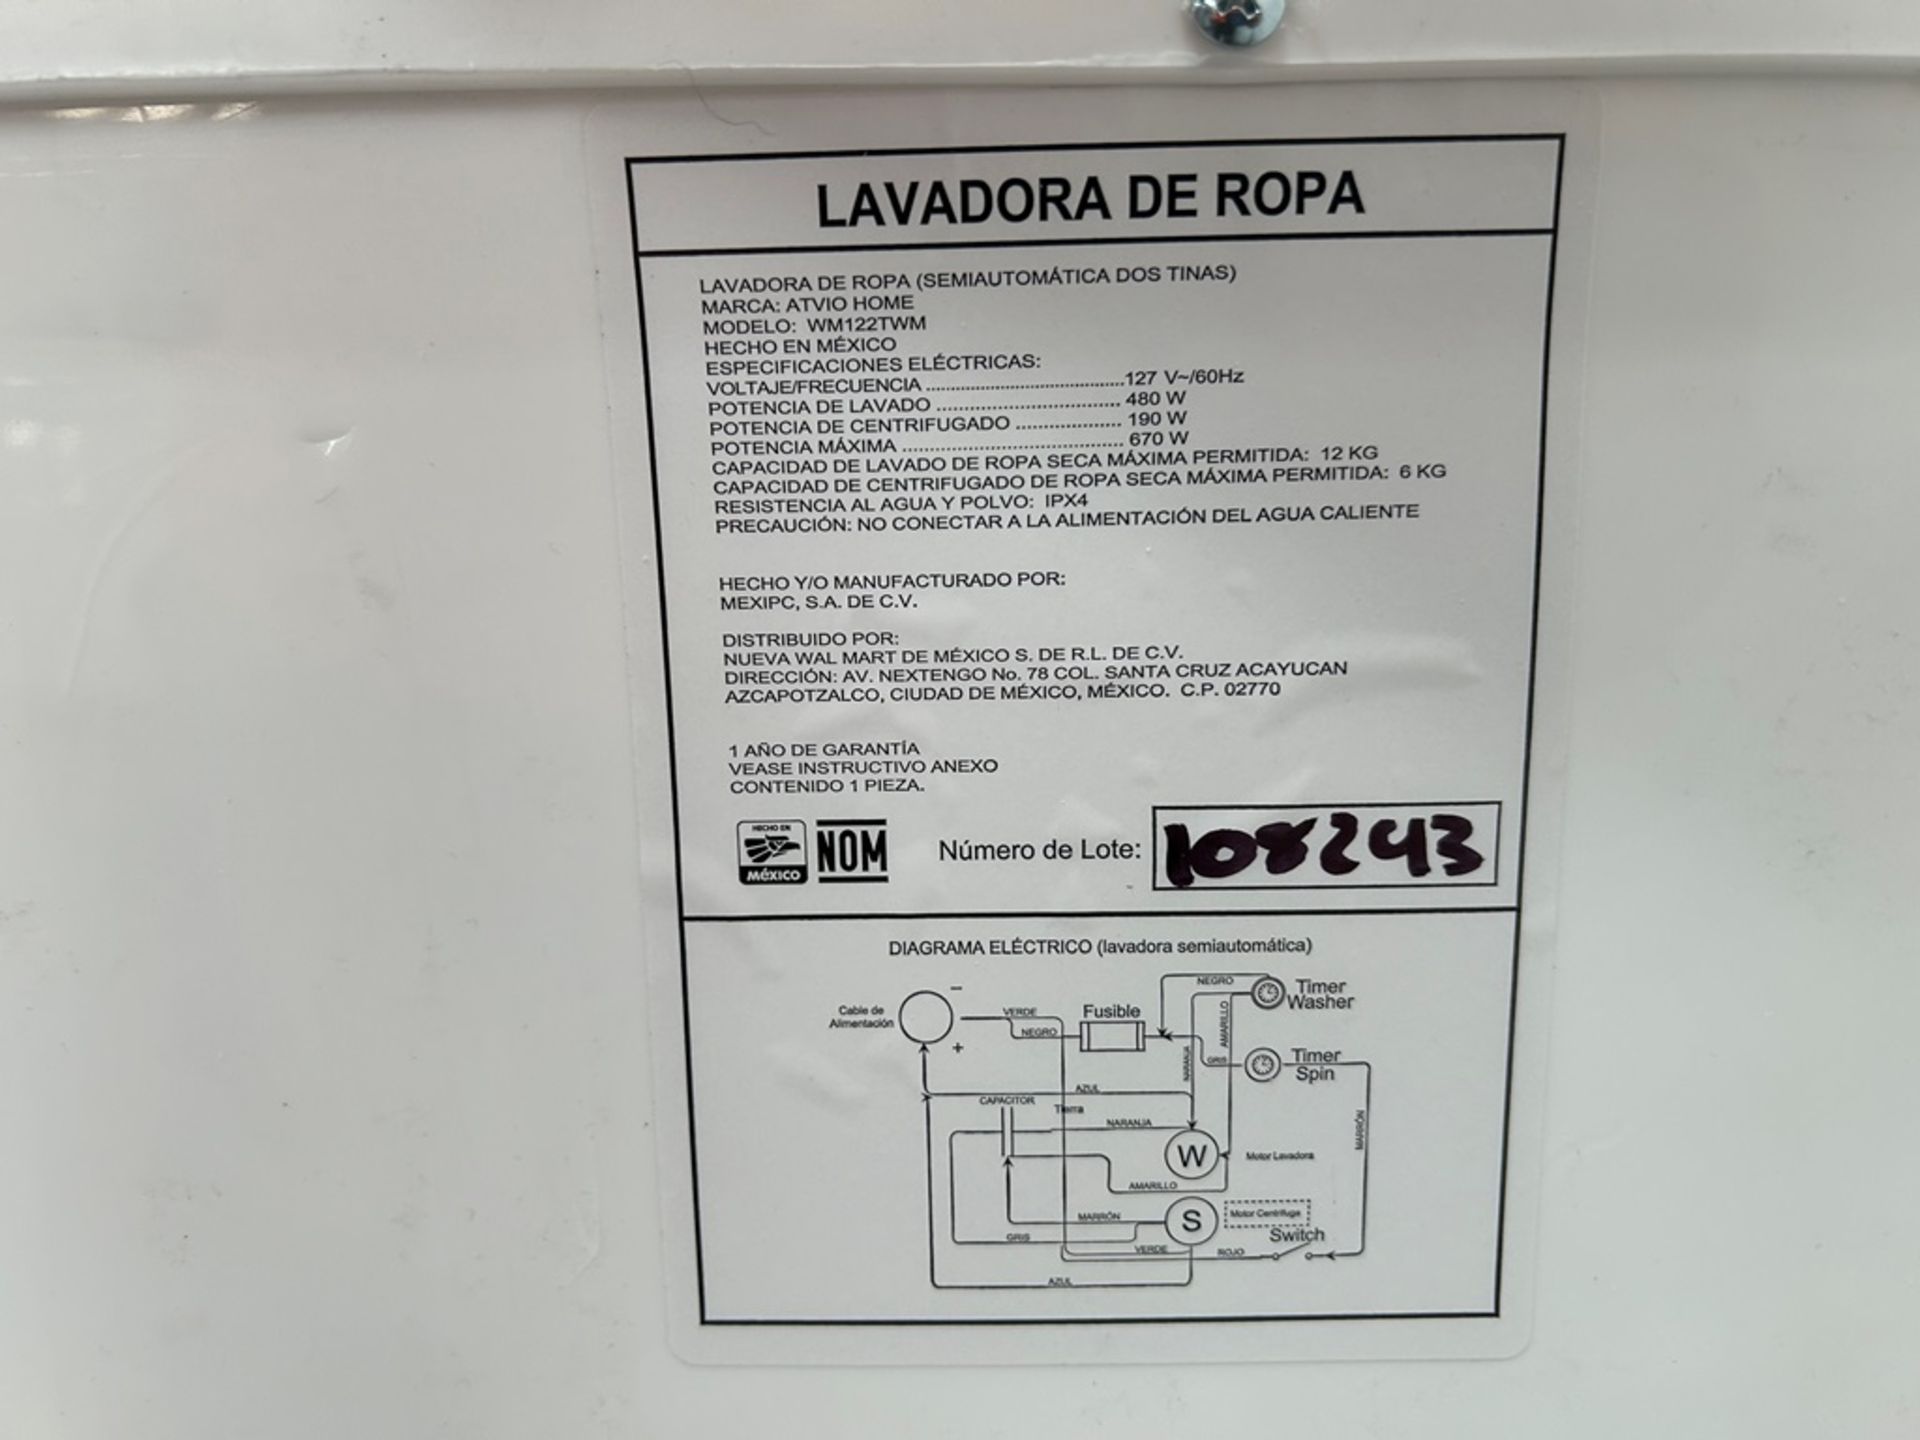 Lote de 3 lavadoras contiene: 1 Lavadora de 21 KG, Marca KOBLENZ, Modelo LRKF21P, Serie 31522, Colo - Image 8 of 13